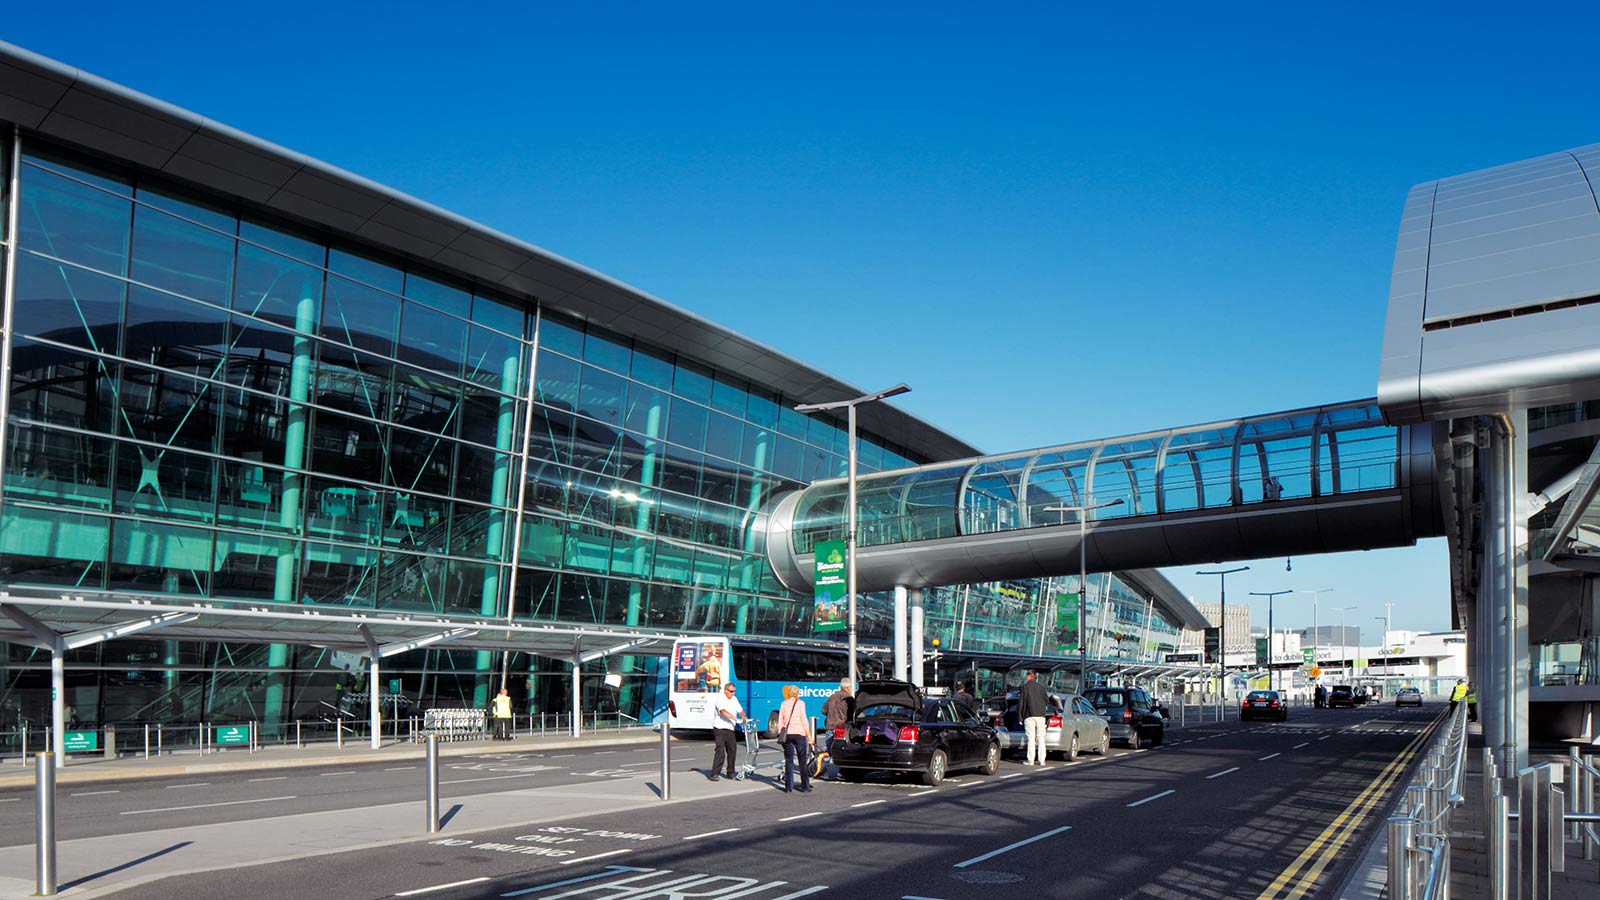  Dublin  Airport Terminal 2  How Dublin  s new terminal got 